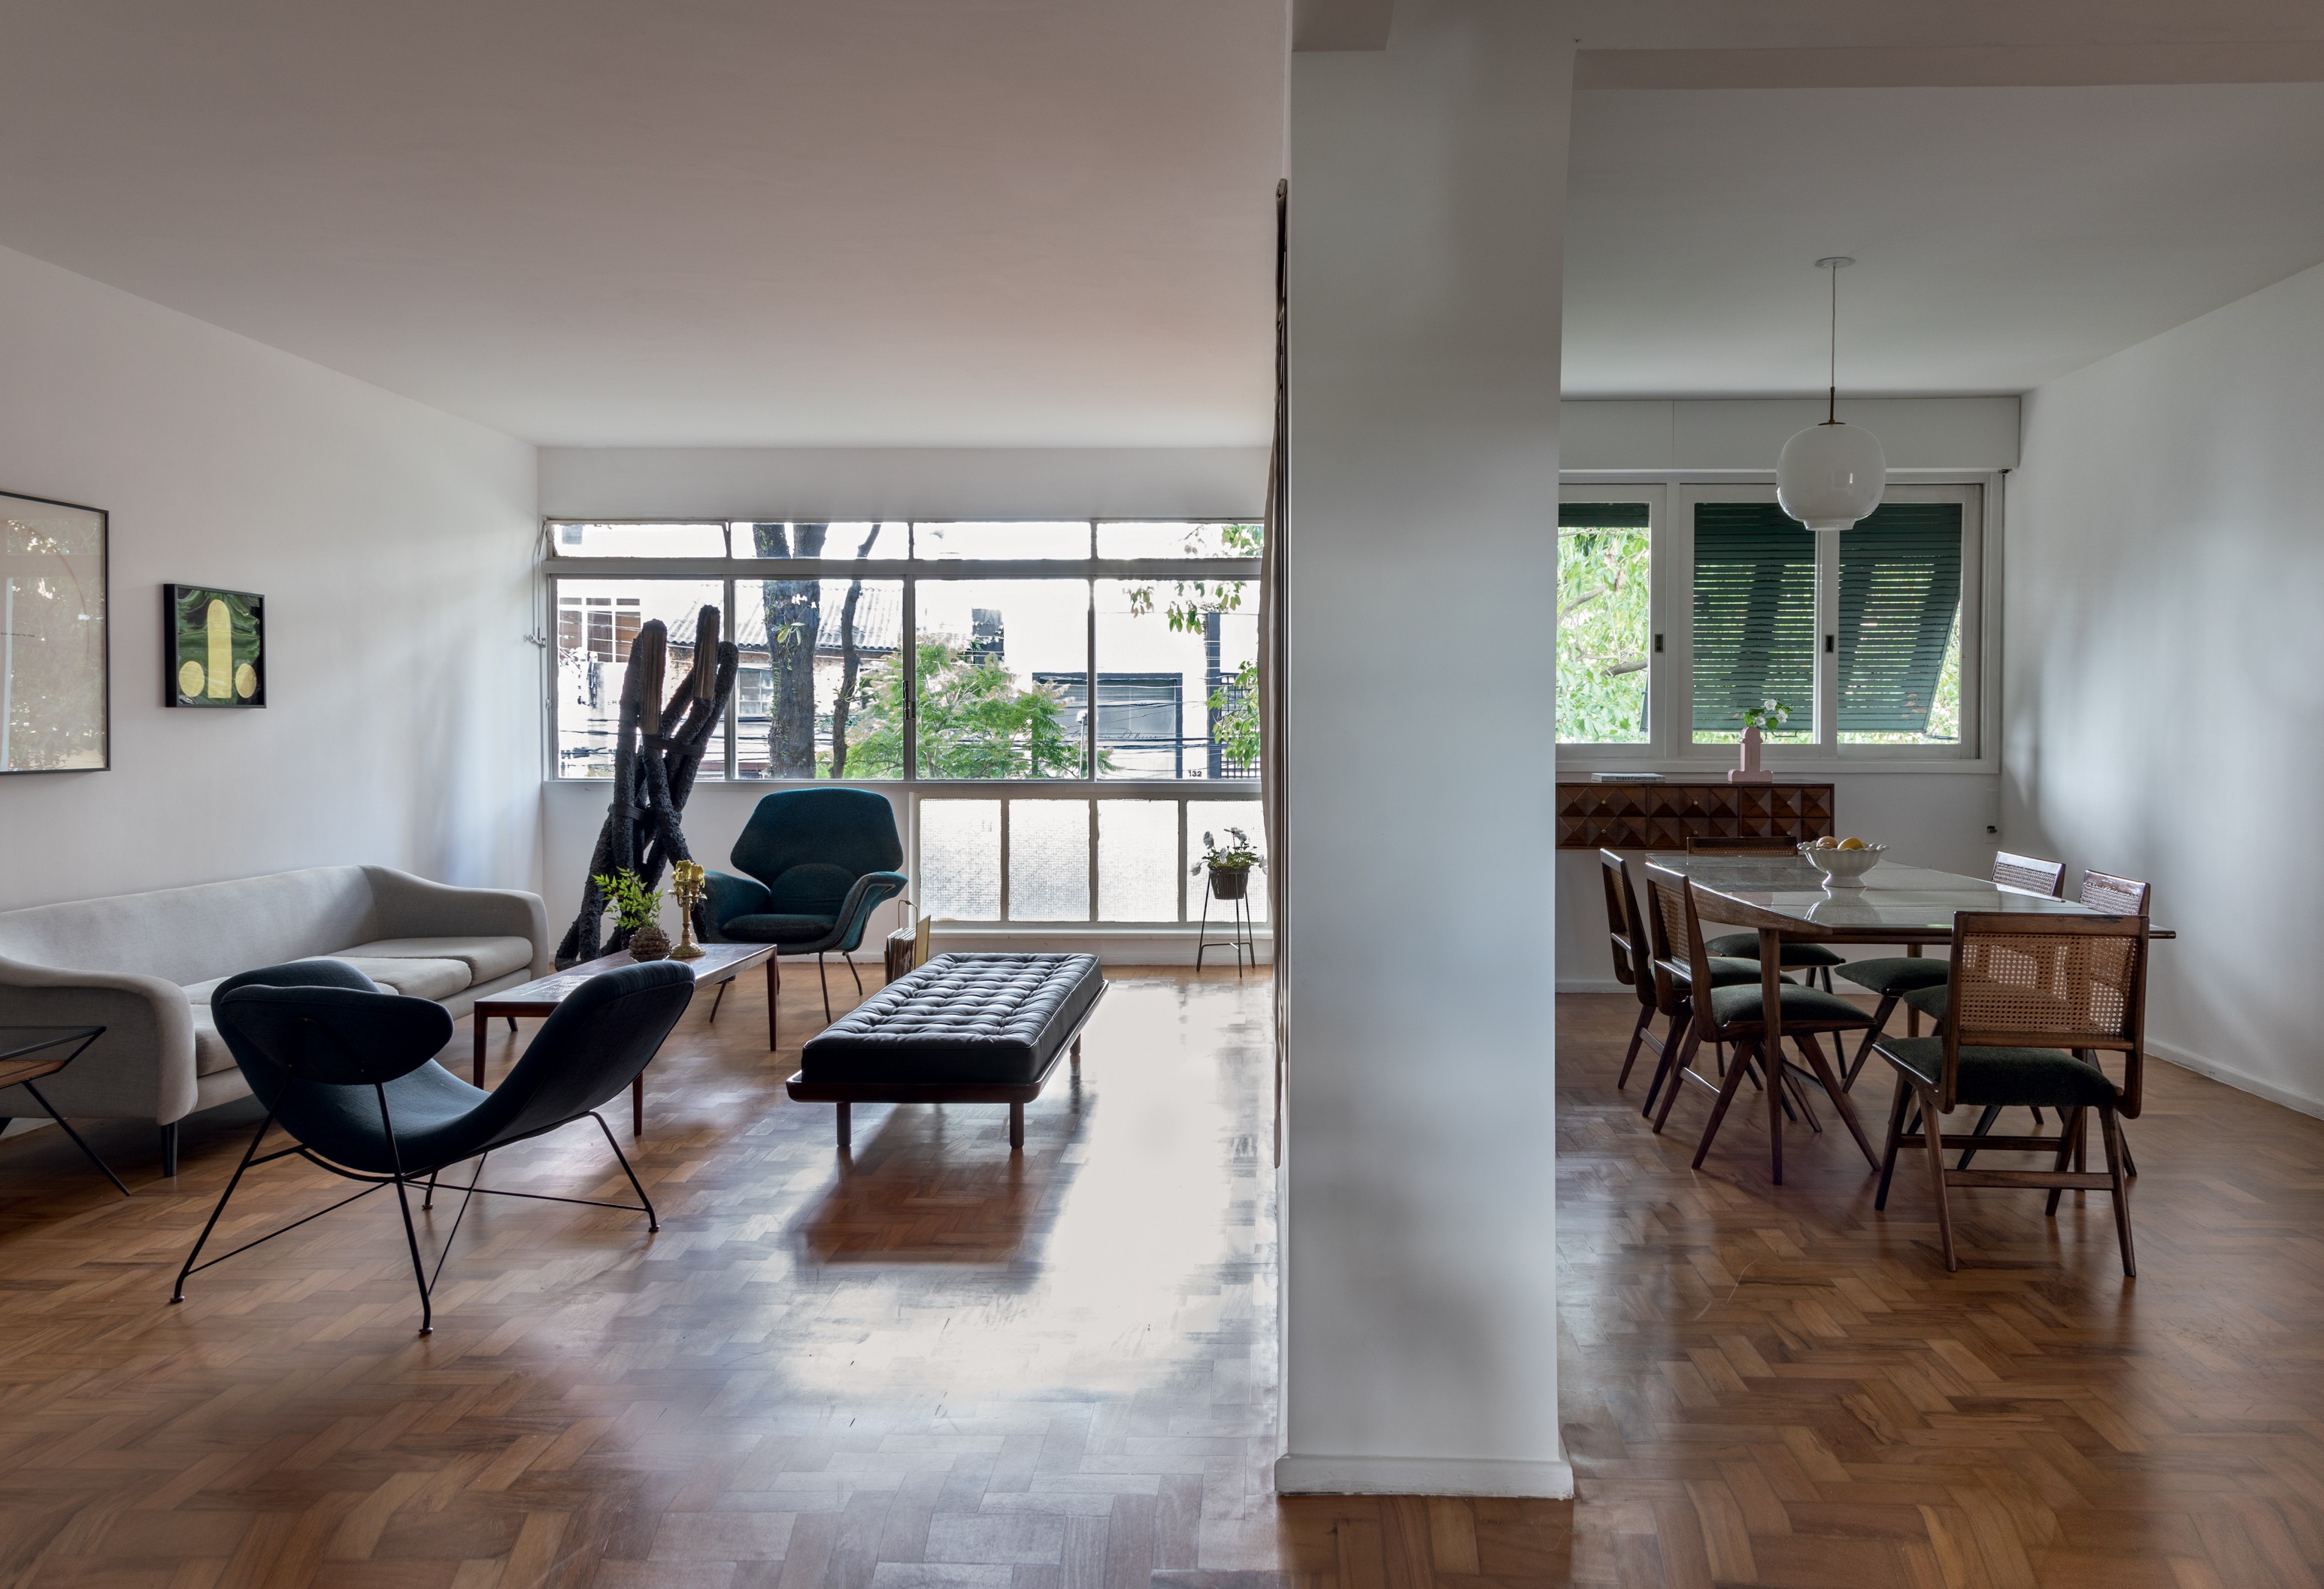 Apartamento minimalista em São Paulo destaca arte e móveis raros (Foto: Ruy Teixeira)